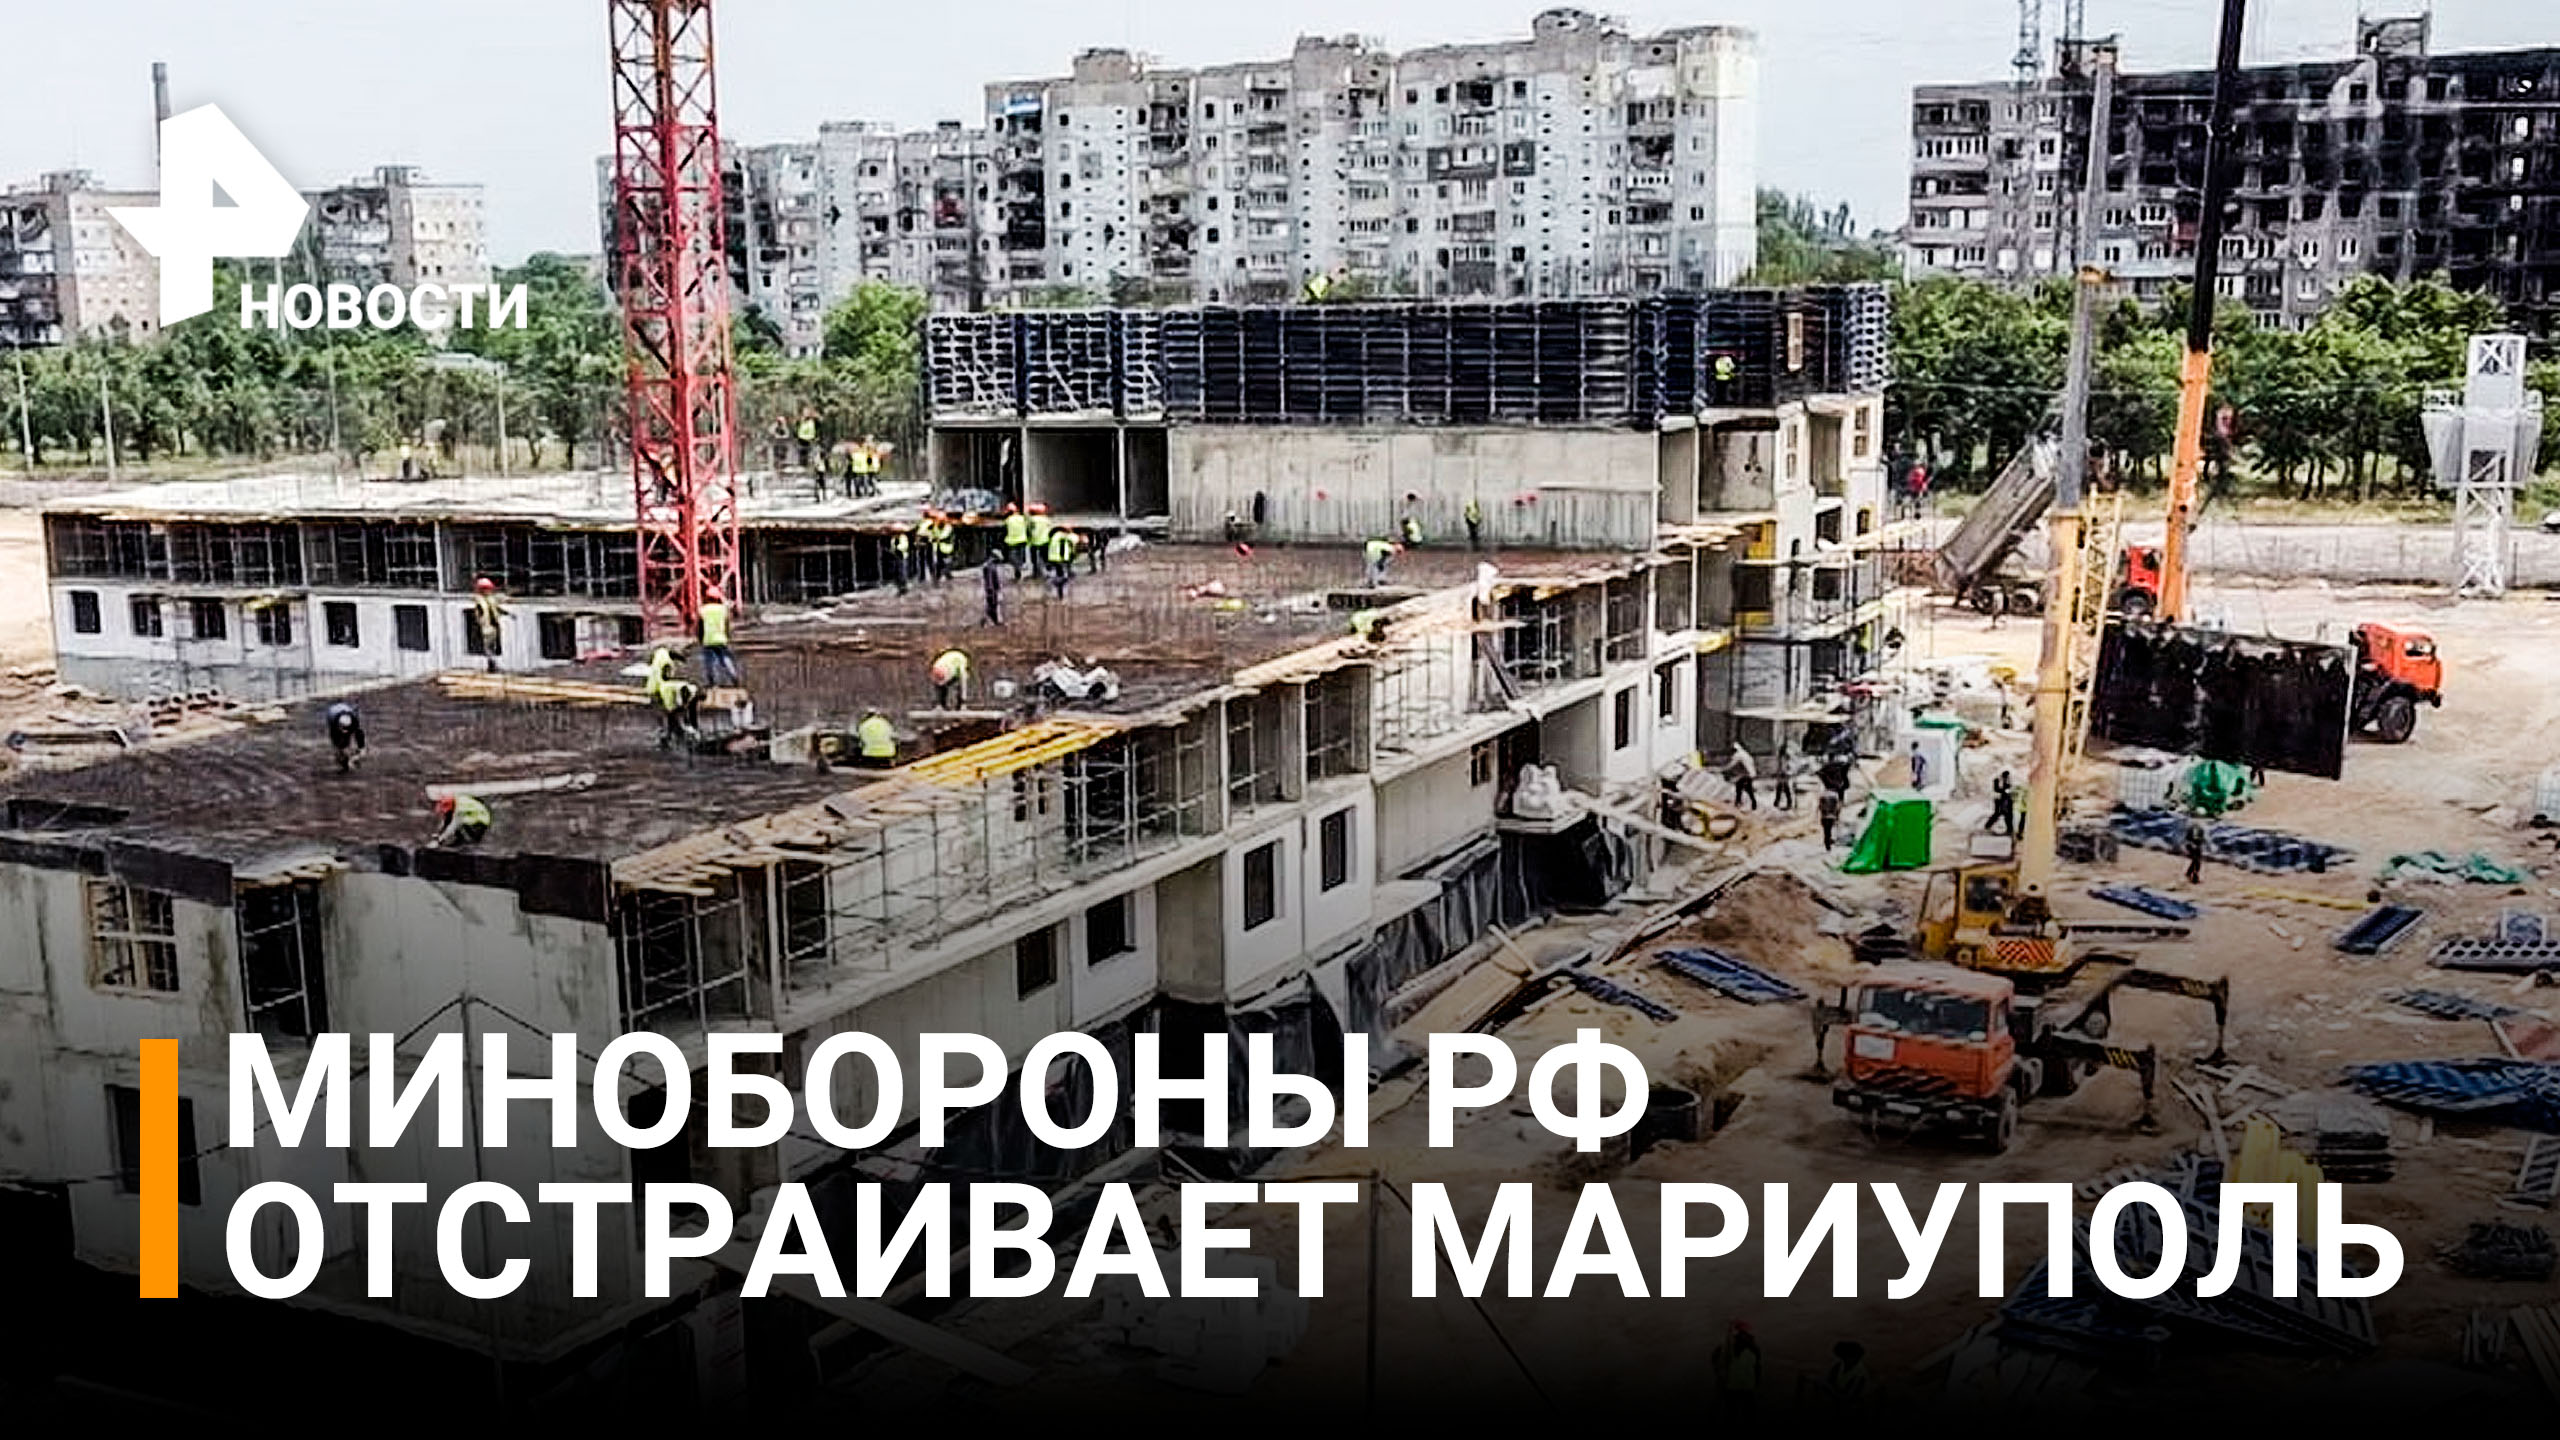 Минобороны России стоит в Мариуполе 12 новых жилых домов / РЕН Новости